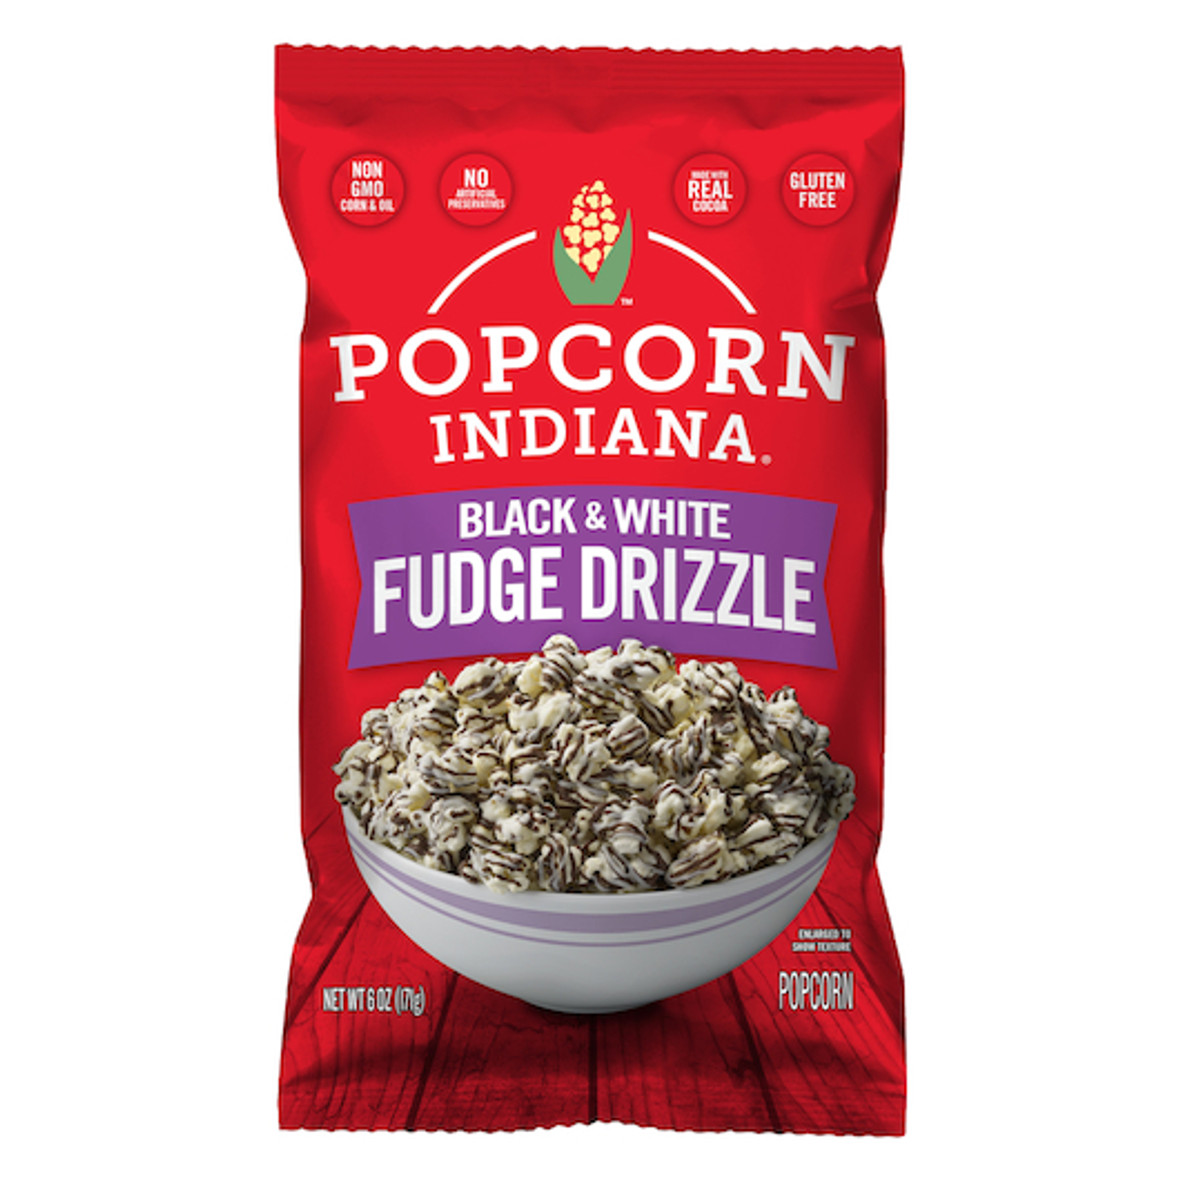 Popcorn Indiana Black And White Fudge Drizzled Popcorn, 6 Ounce, 6 Per Case